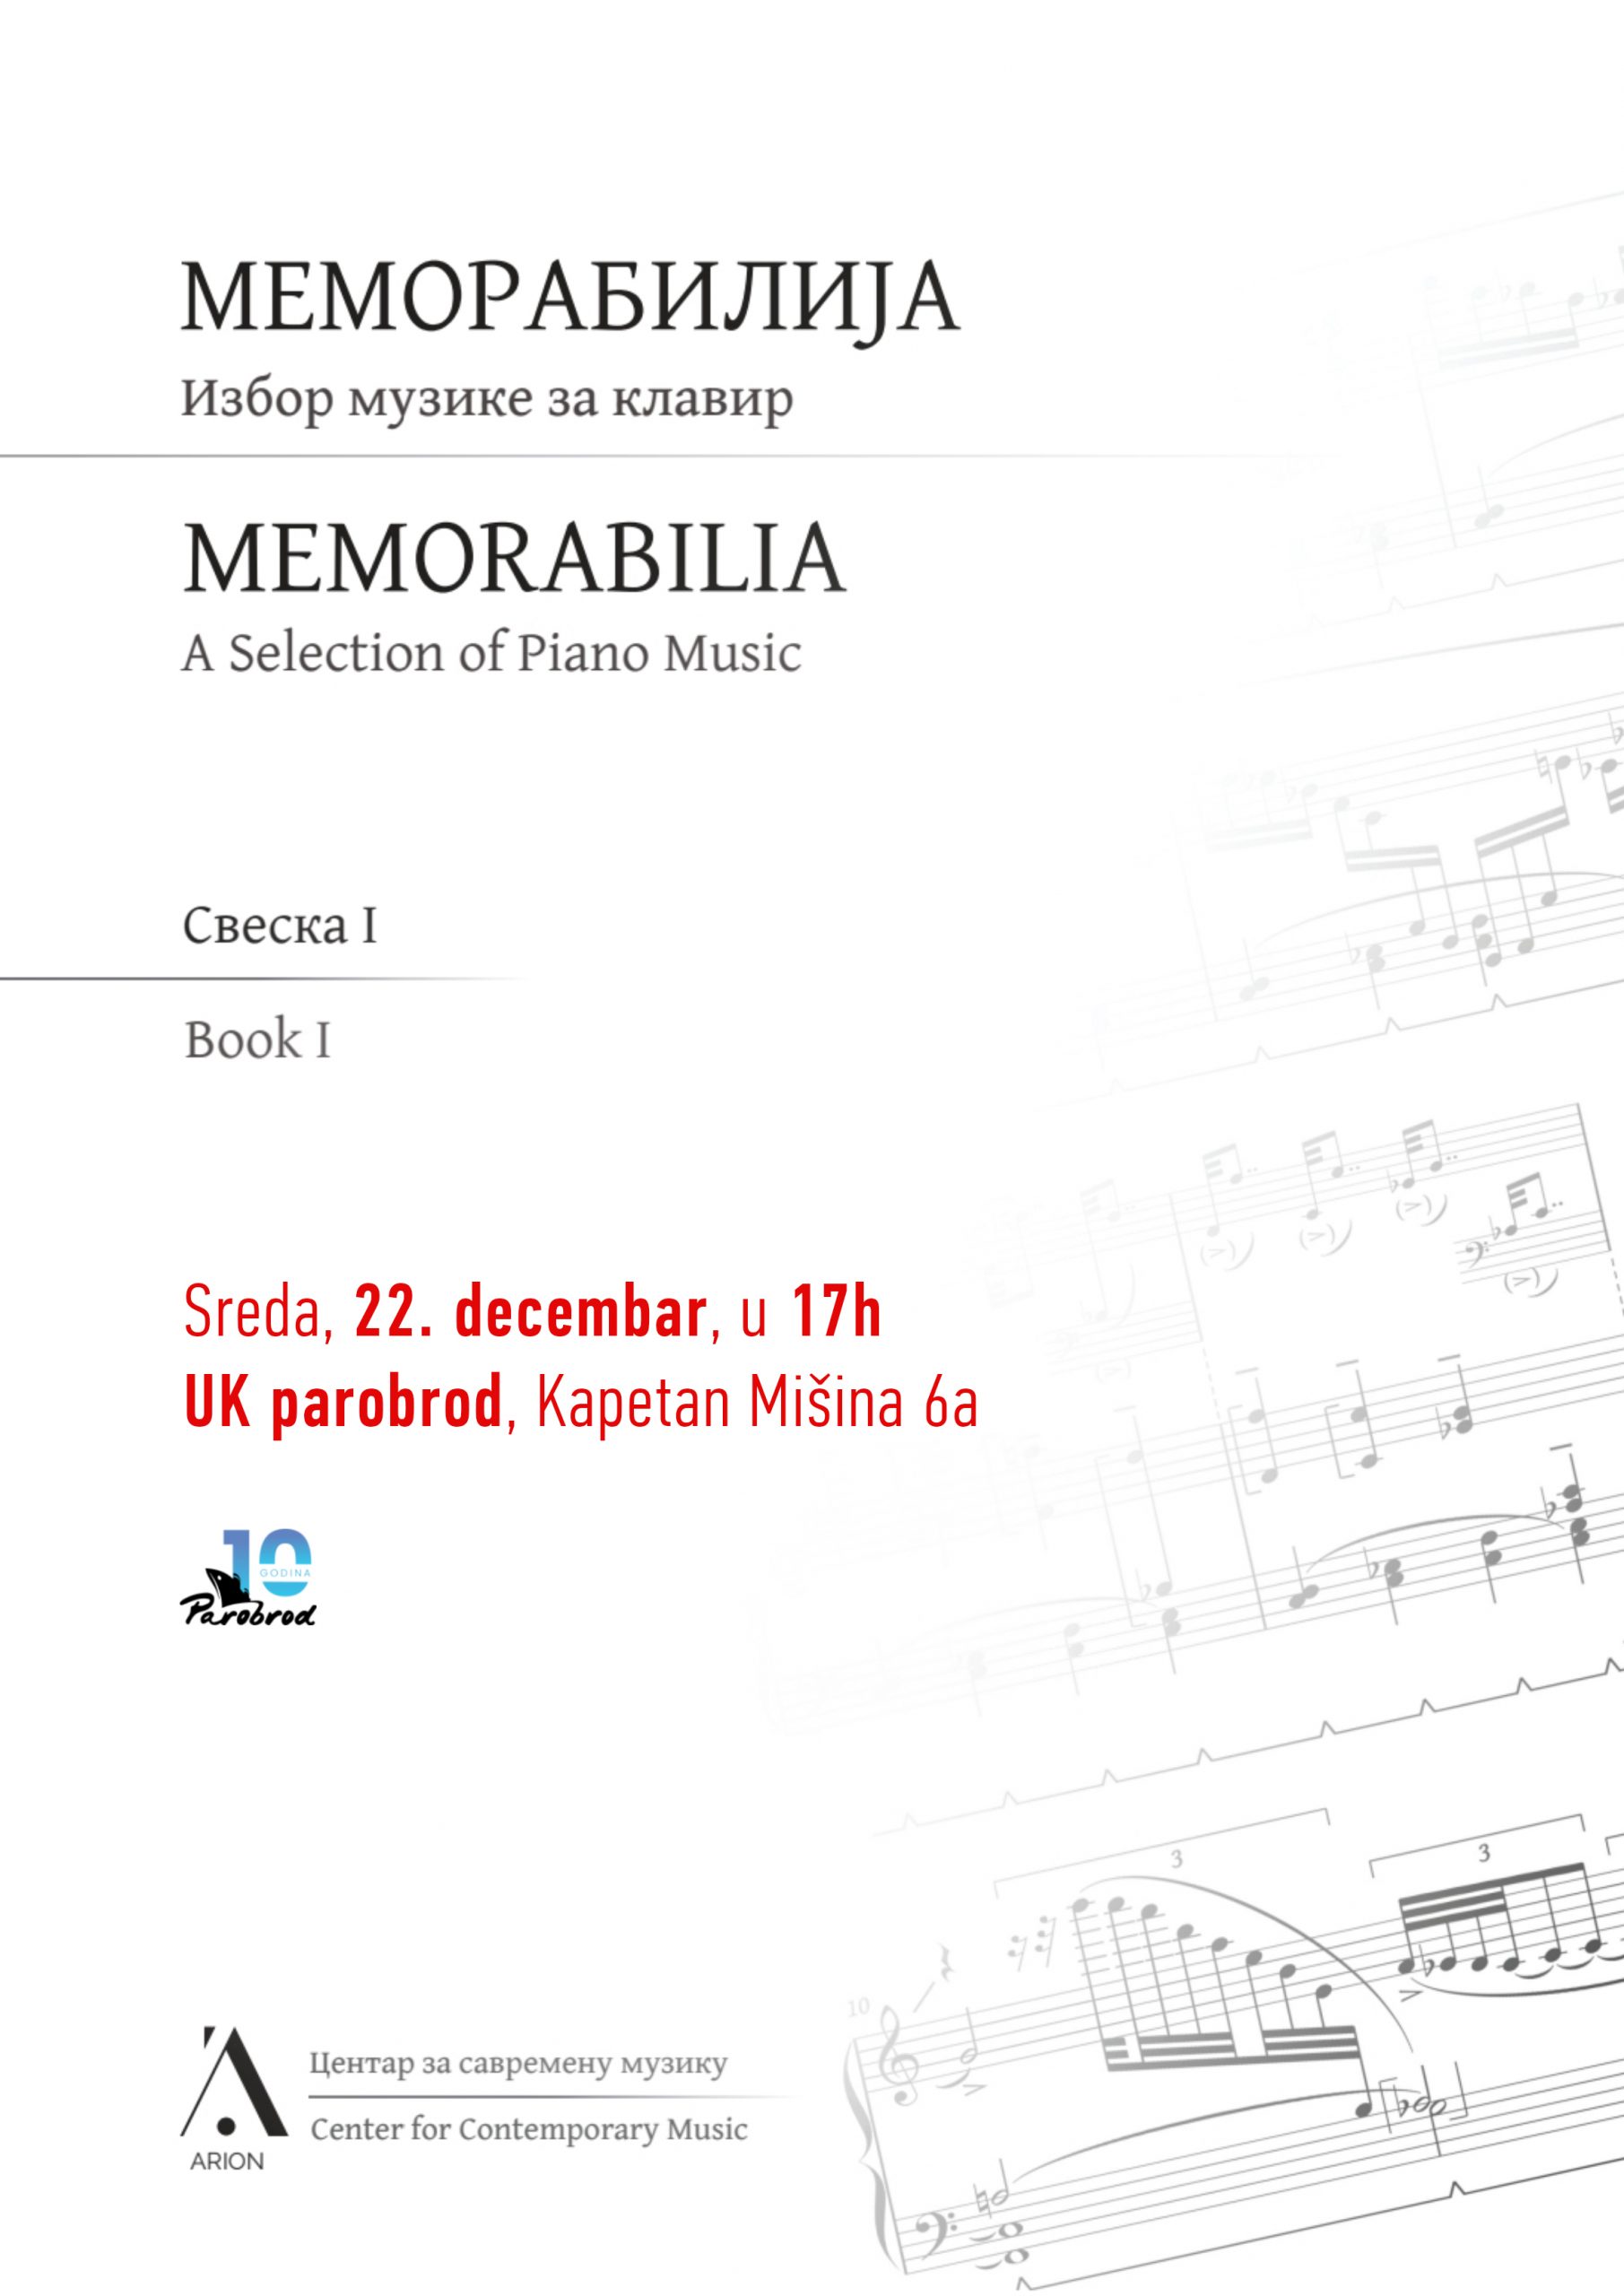 Koncertna promocija zbirke  klavirske muzike “Memorabilija”